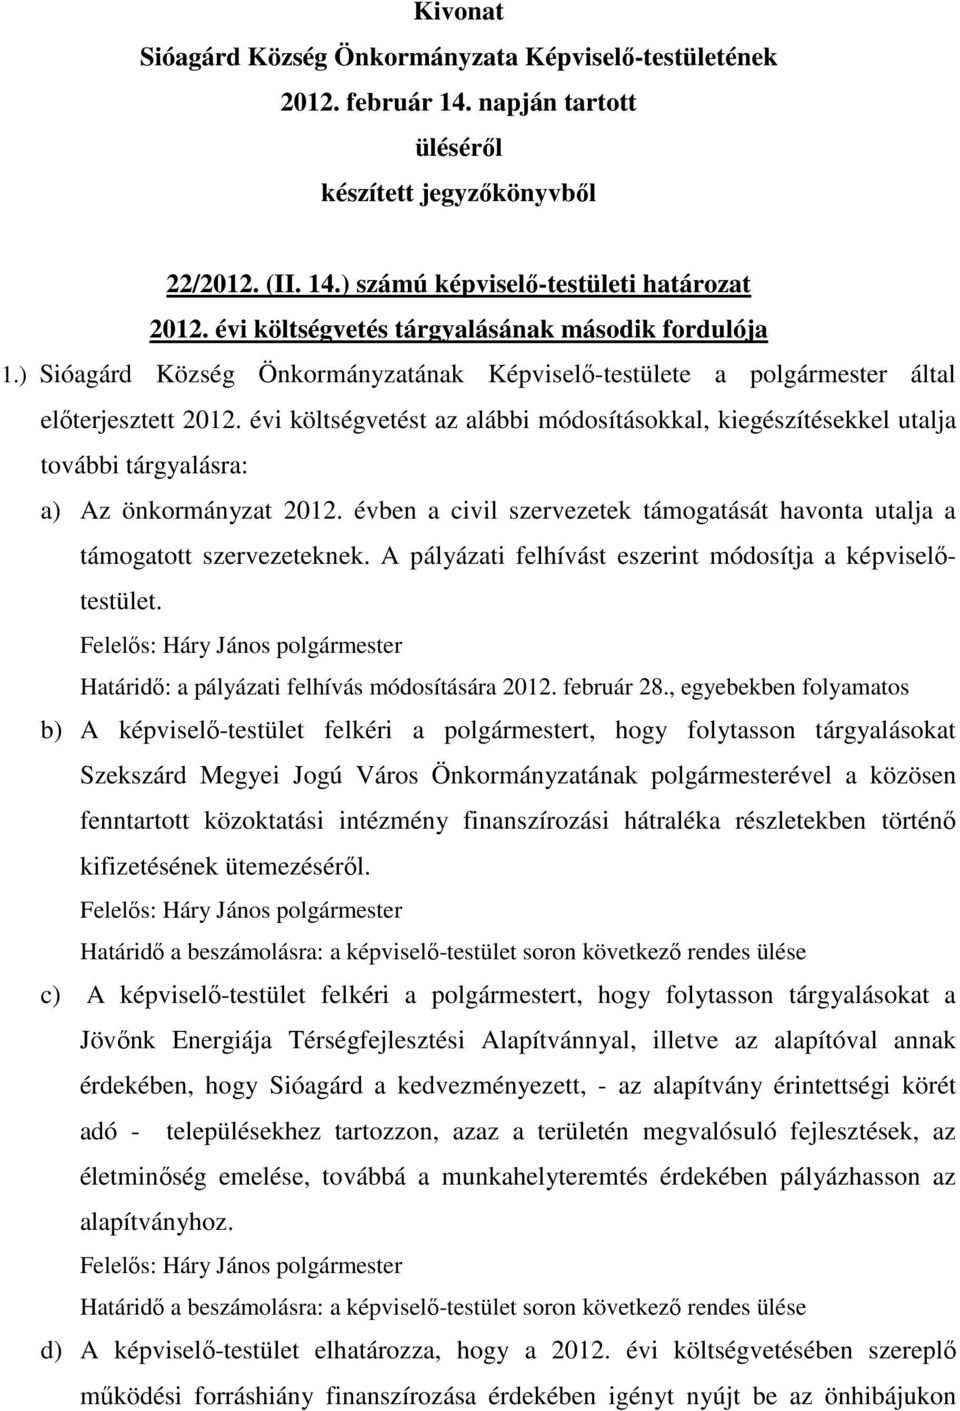 A pályázati felhívást eszerint módosítja a képviselőtestület. Felelős: Háry János Határidő: a pályázati felhívás módosítására 2012. február 28.